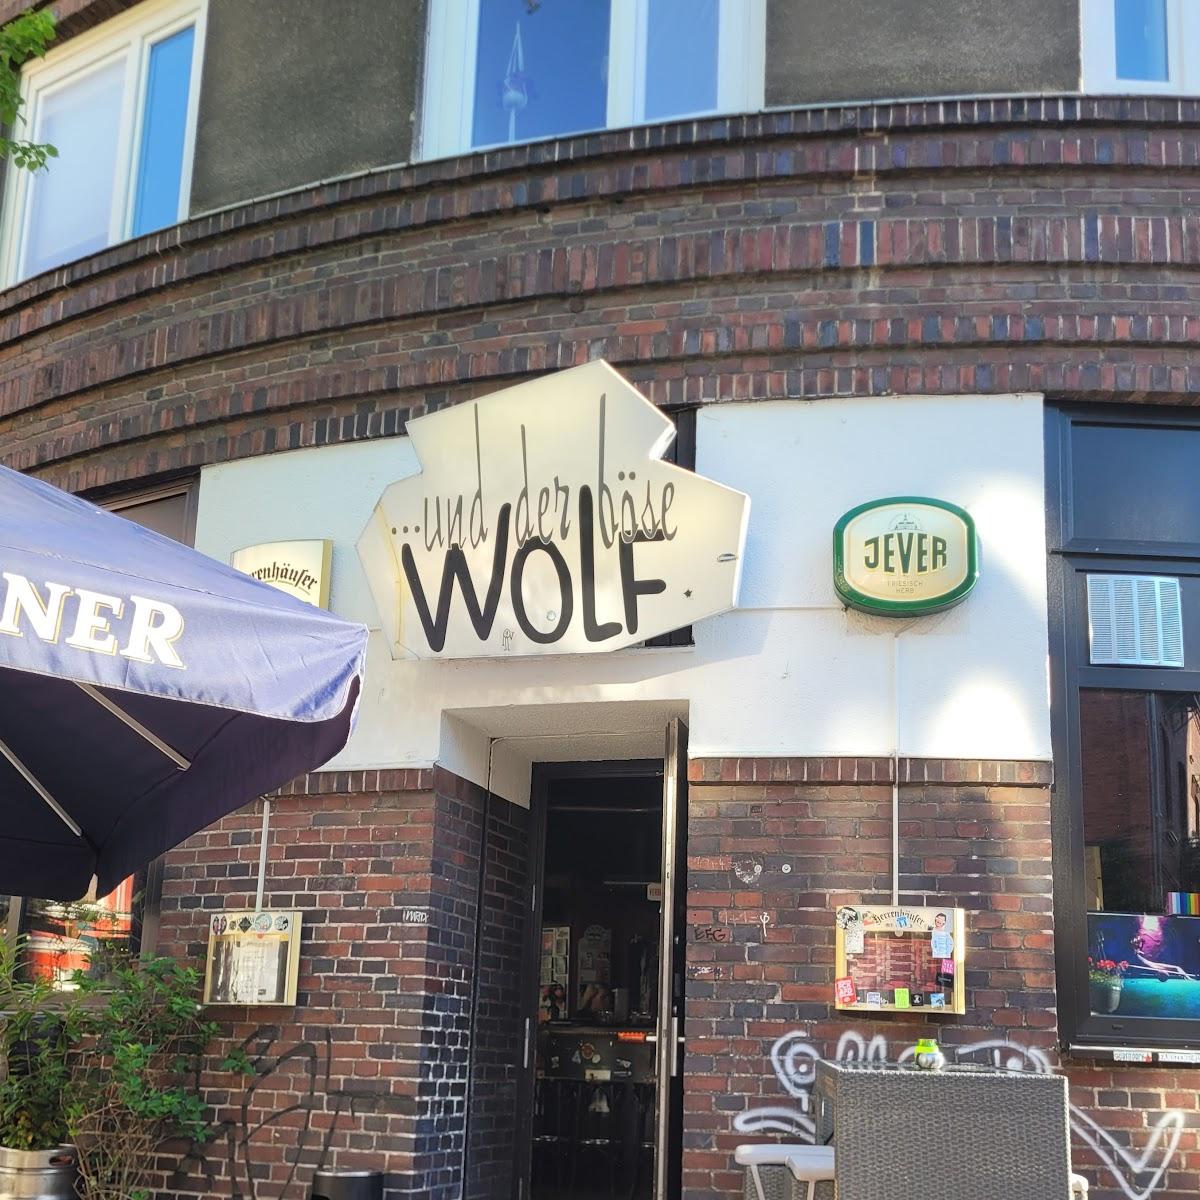 Restaurant "und der böse Wolf" in Hannover